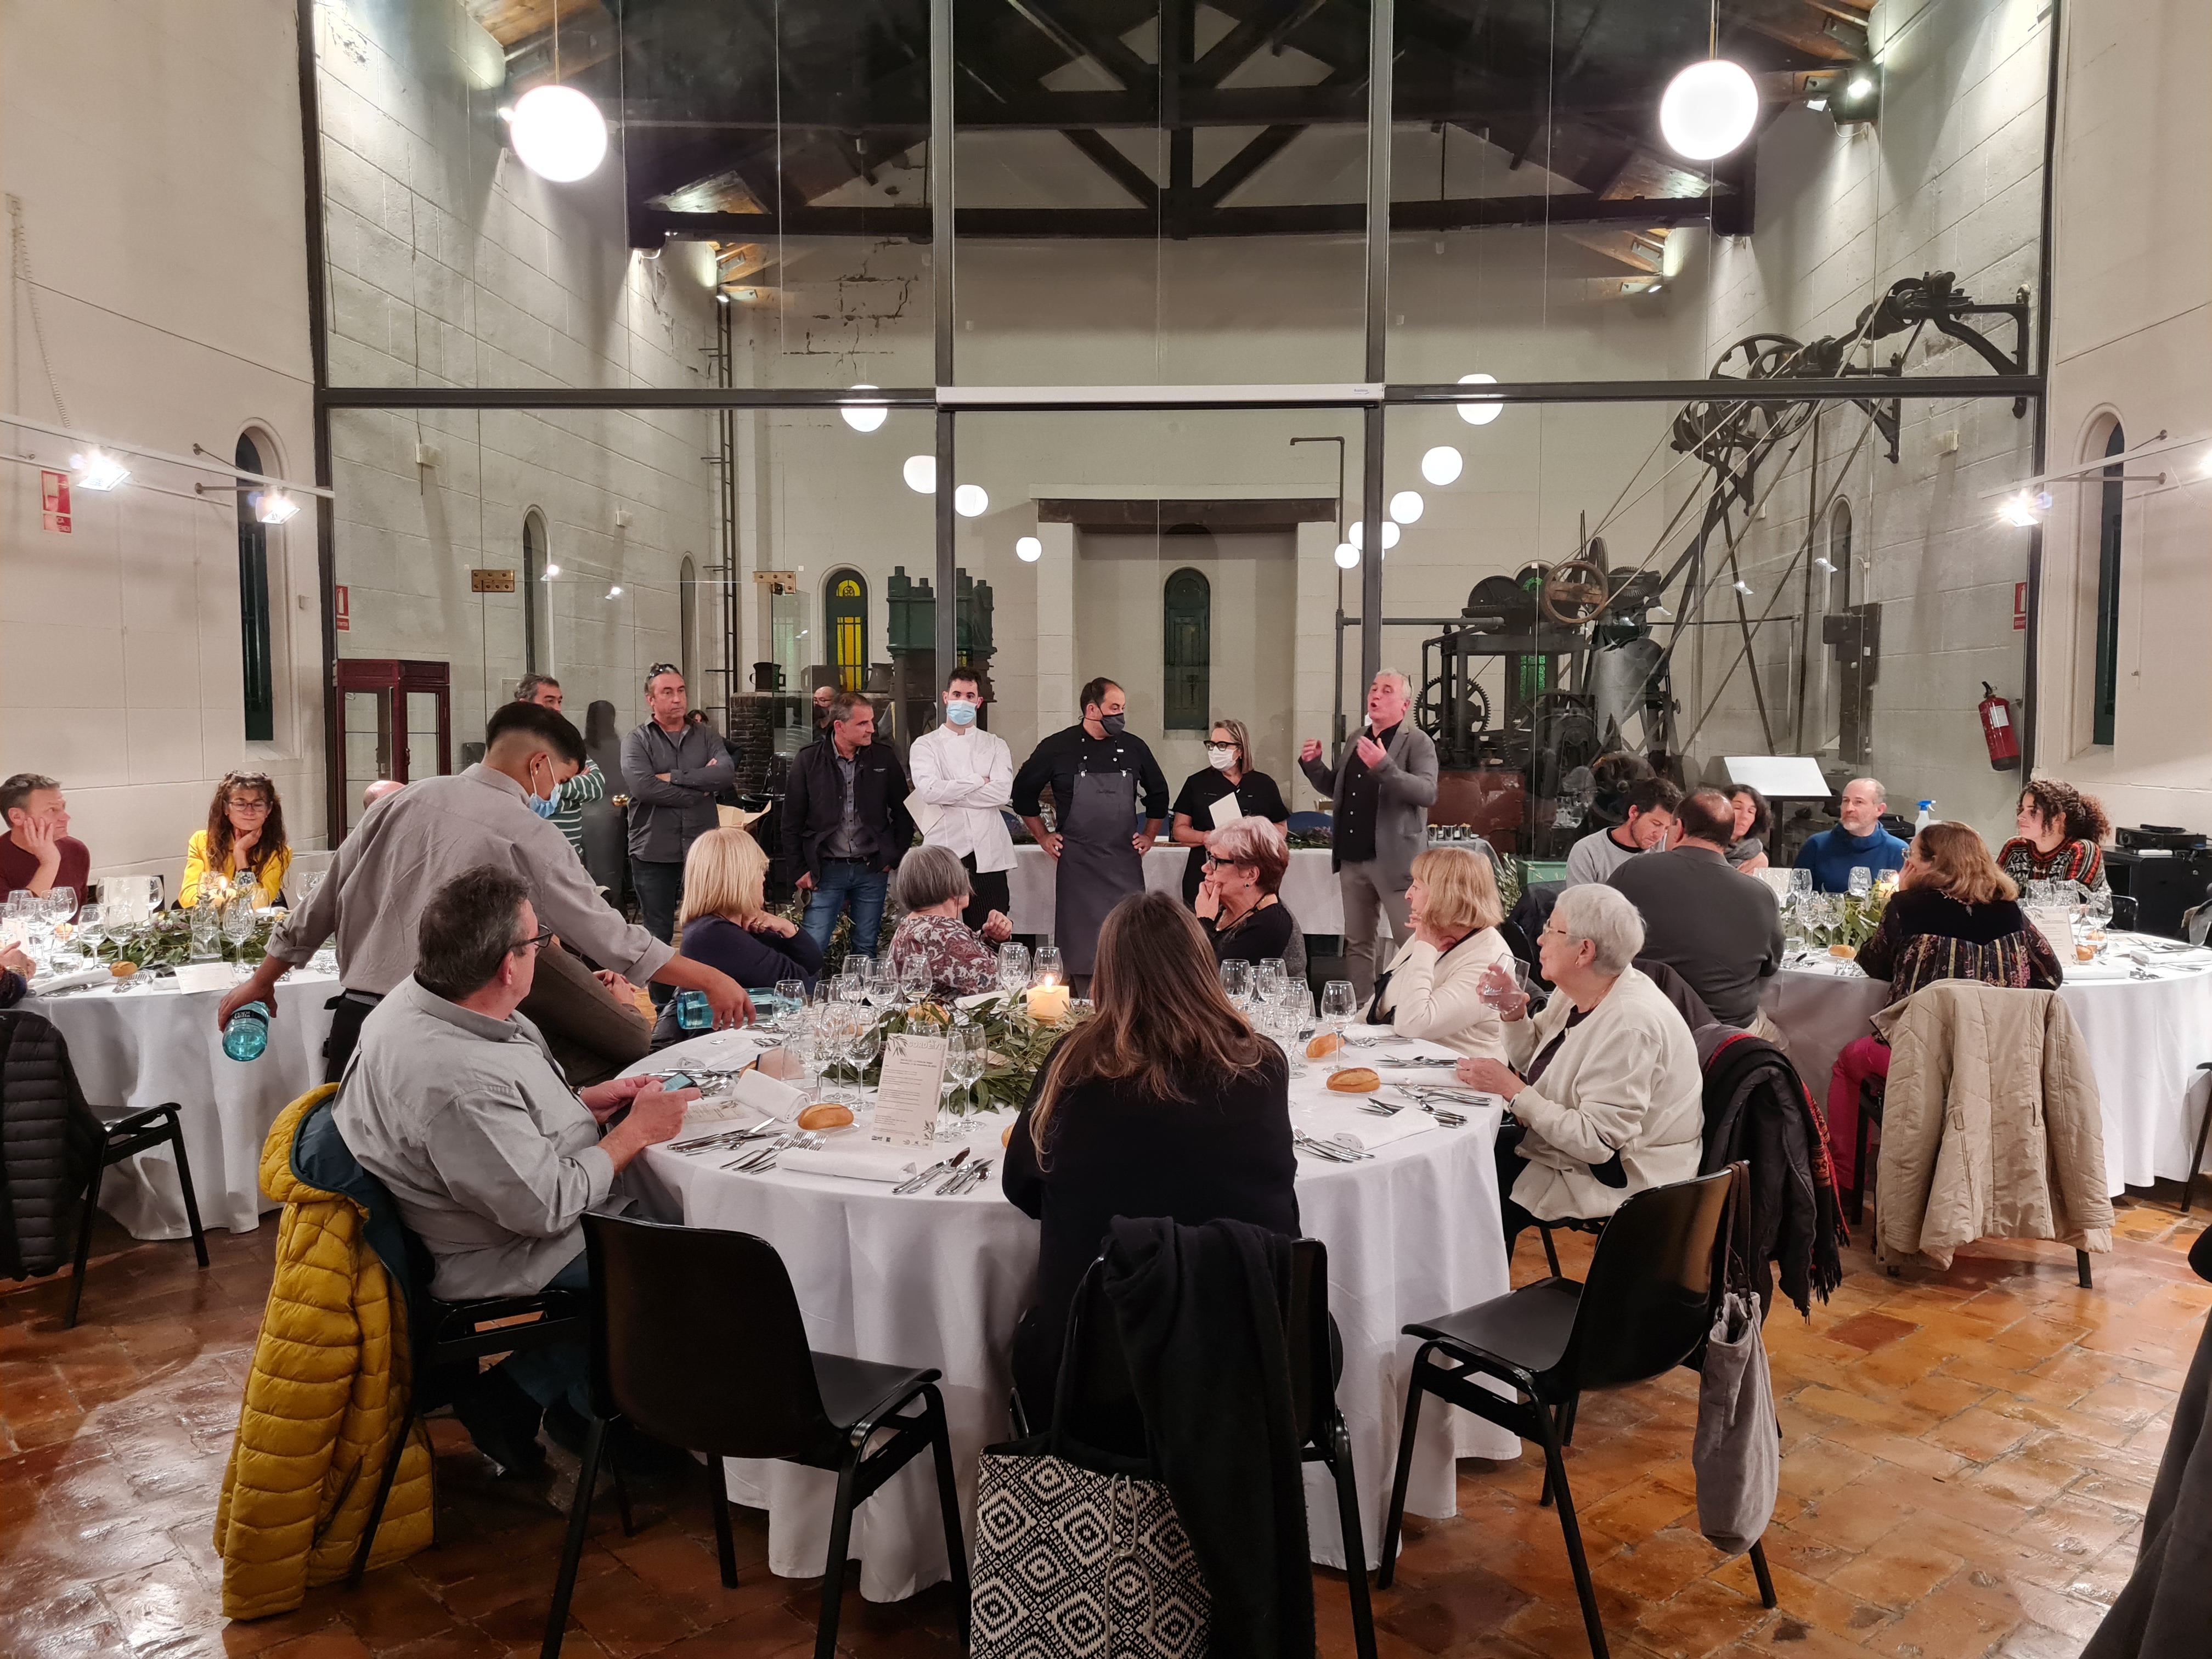 Esdeveniments I Excurcions Cordevi - El Festival Gastronòmic Del Pallars